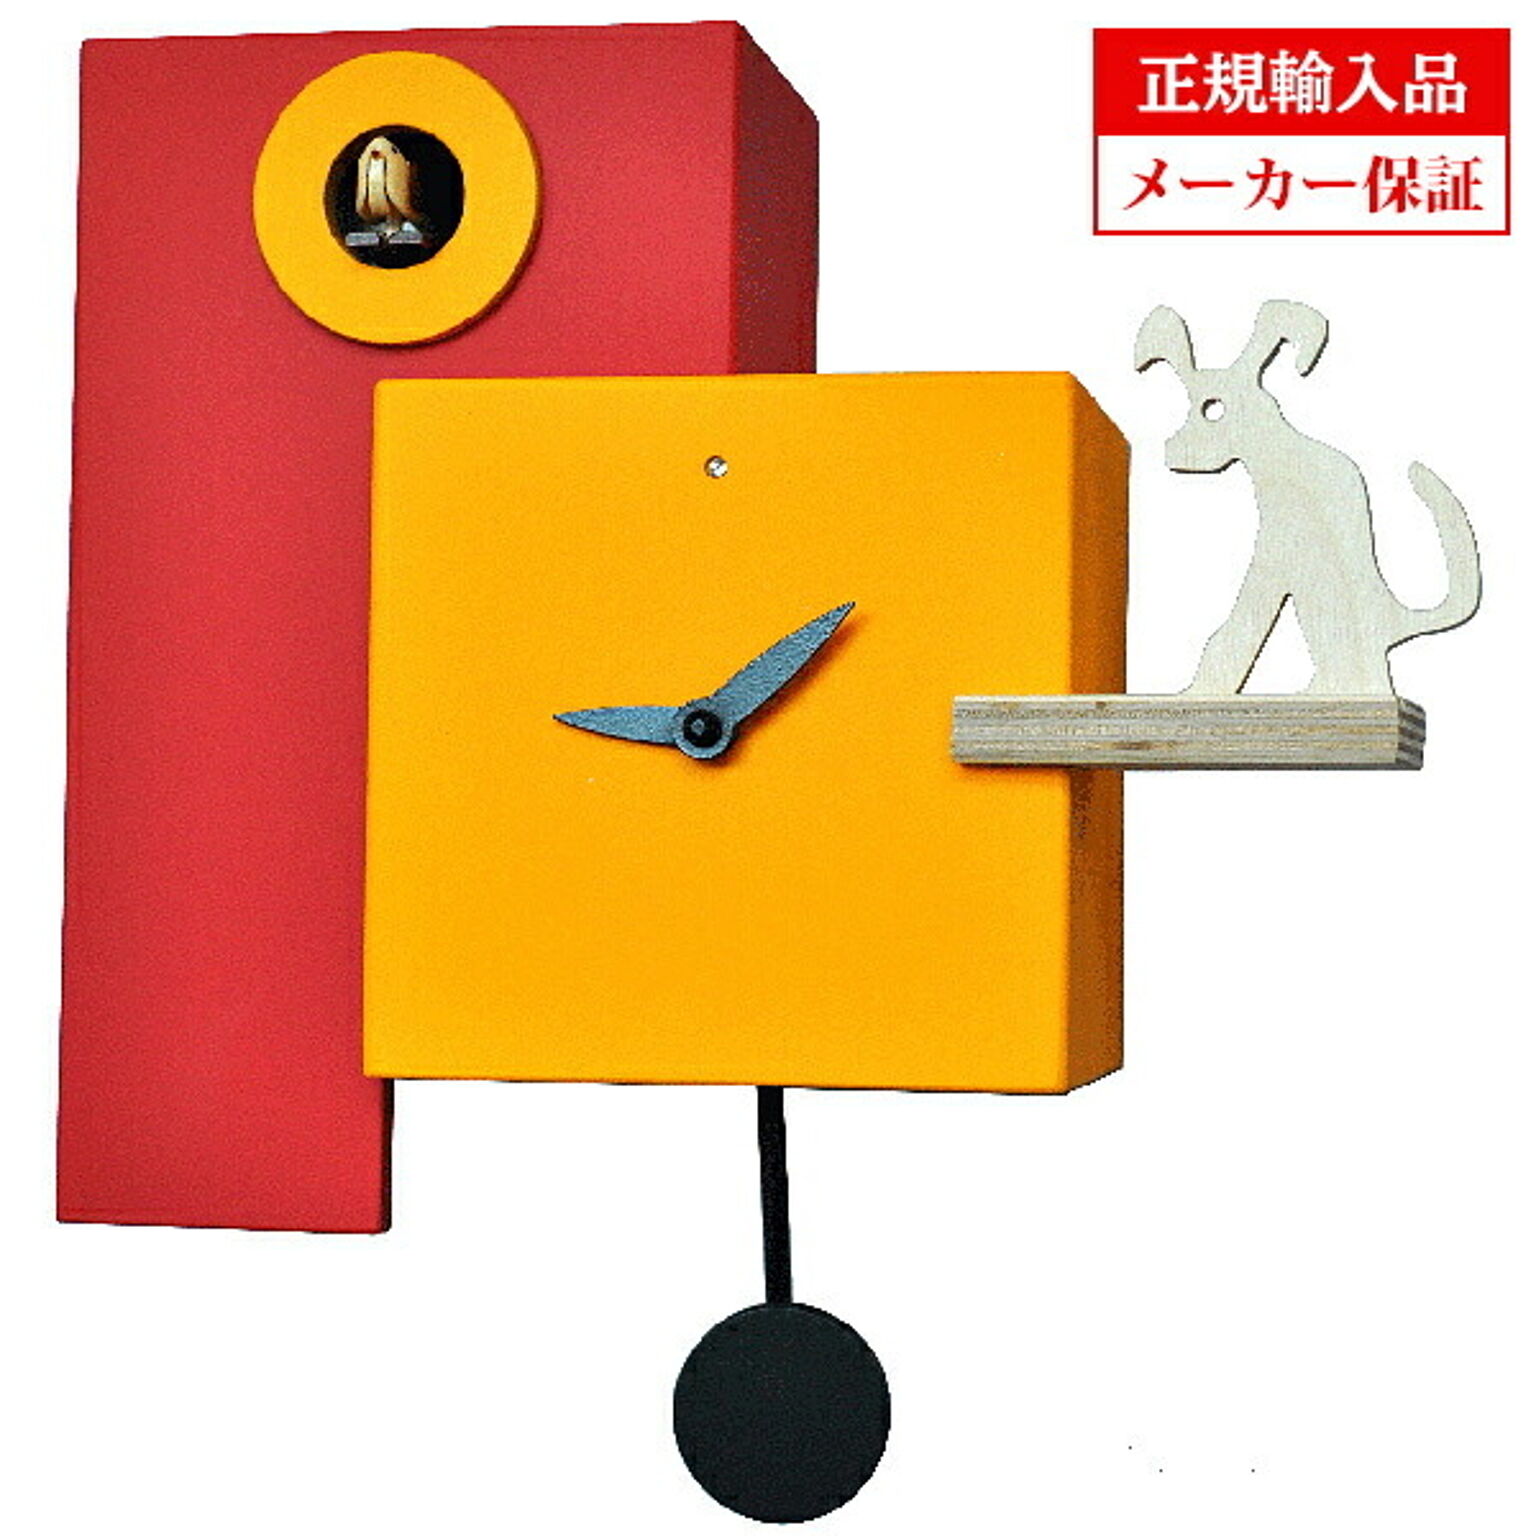 【正規輸入品】イタリア ピロンディーニ Pirondini ART809 木製 クオーツ 鳩時計（はと時計） Rosso-giallo 809 オレンジ